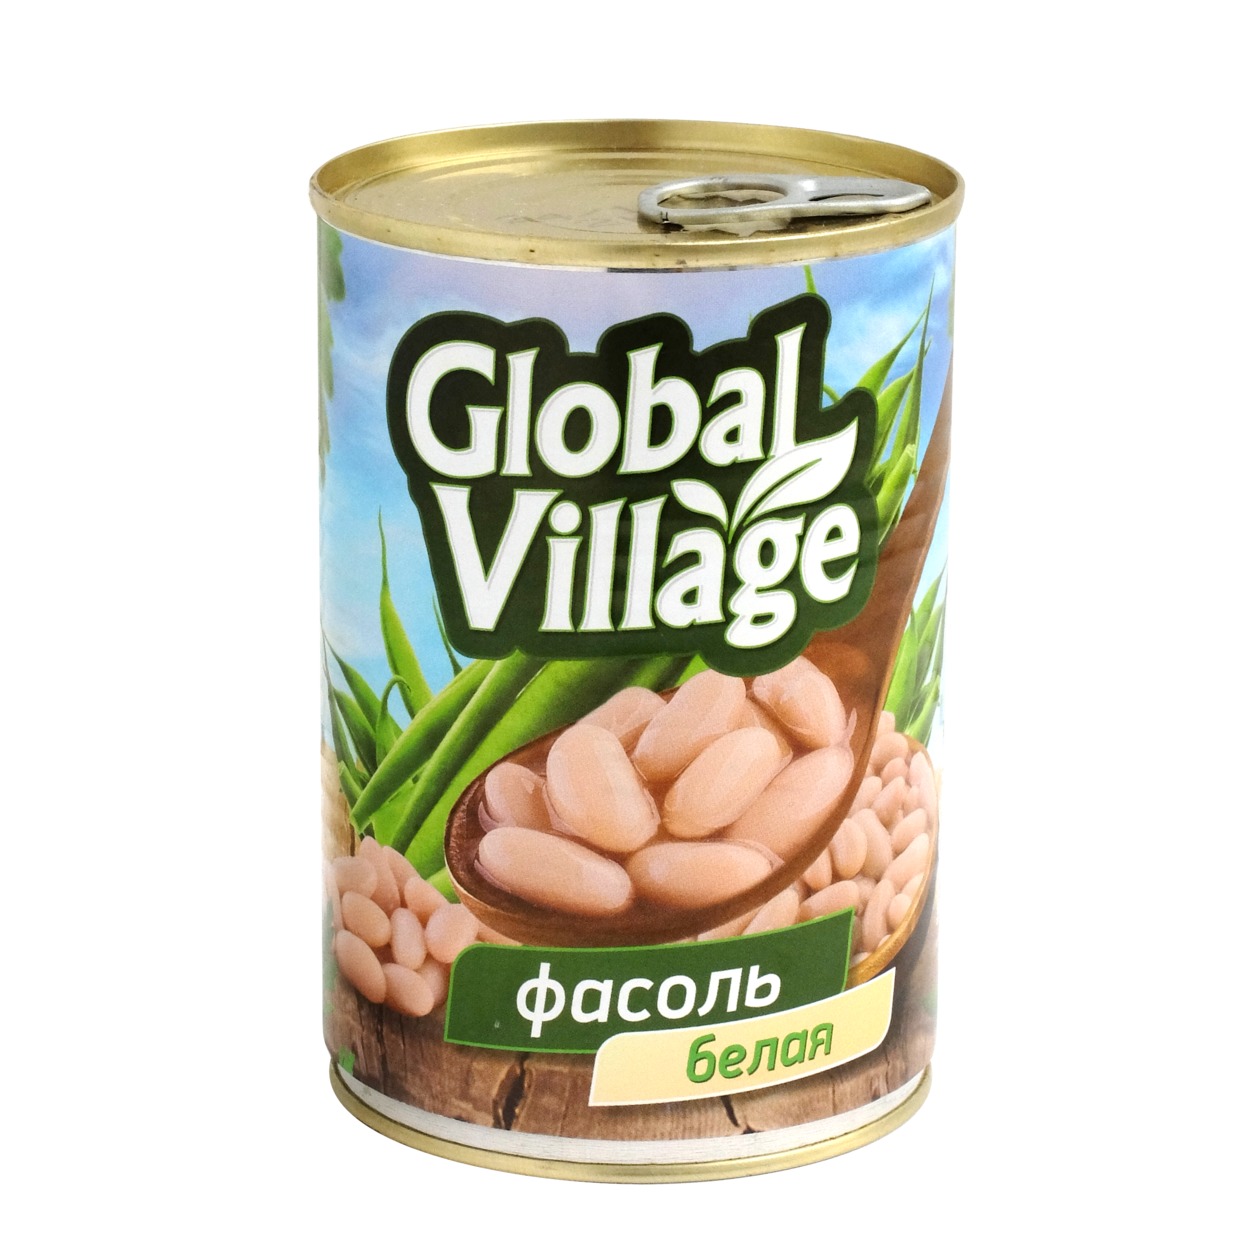 Фасоль Global Village, белая в собственном соку, 425 мл по акции в Пятерочке